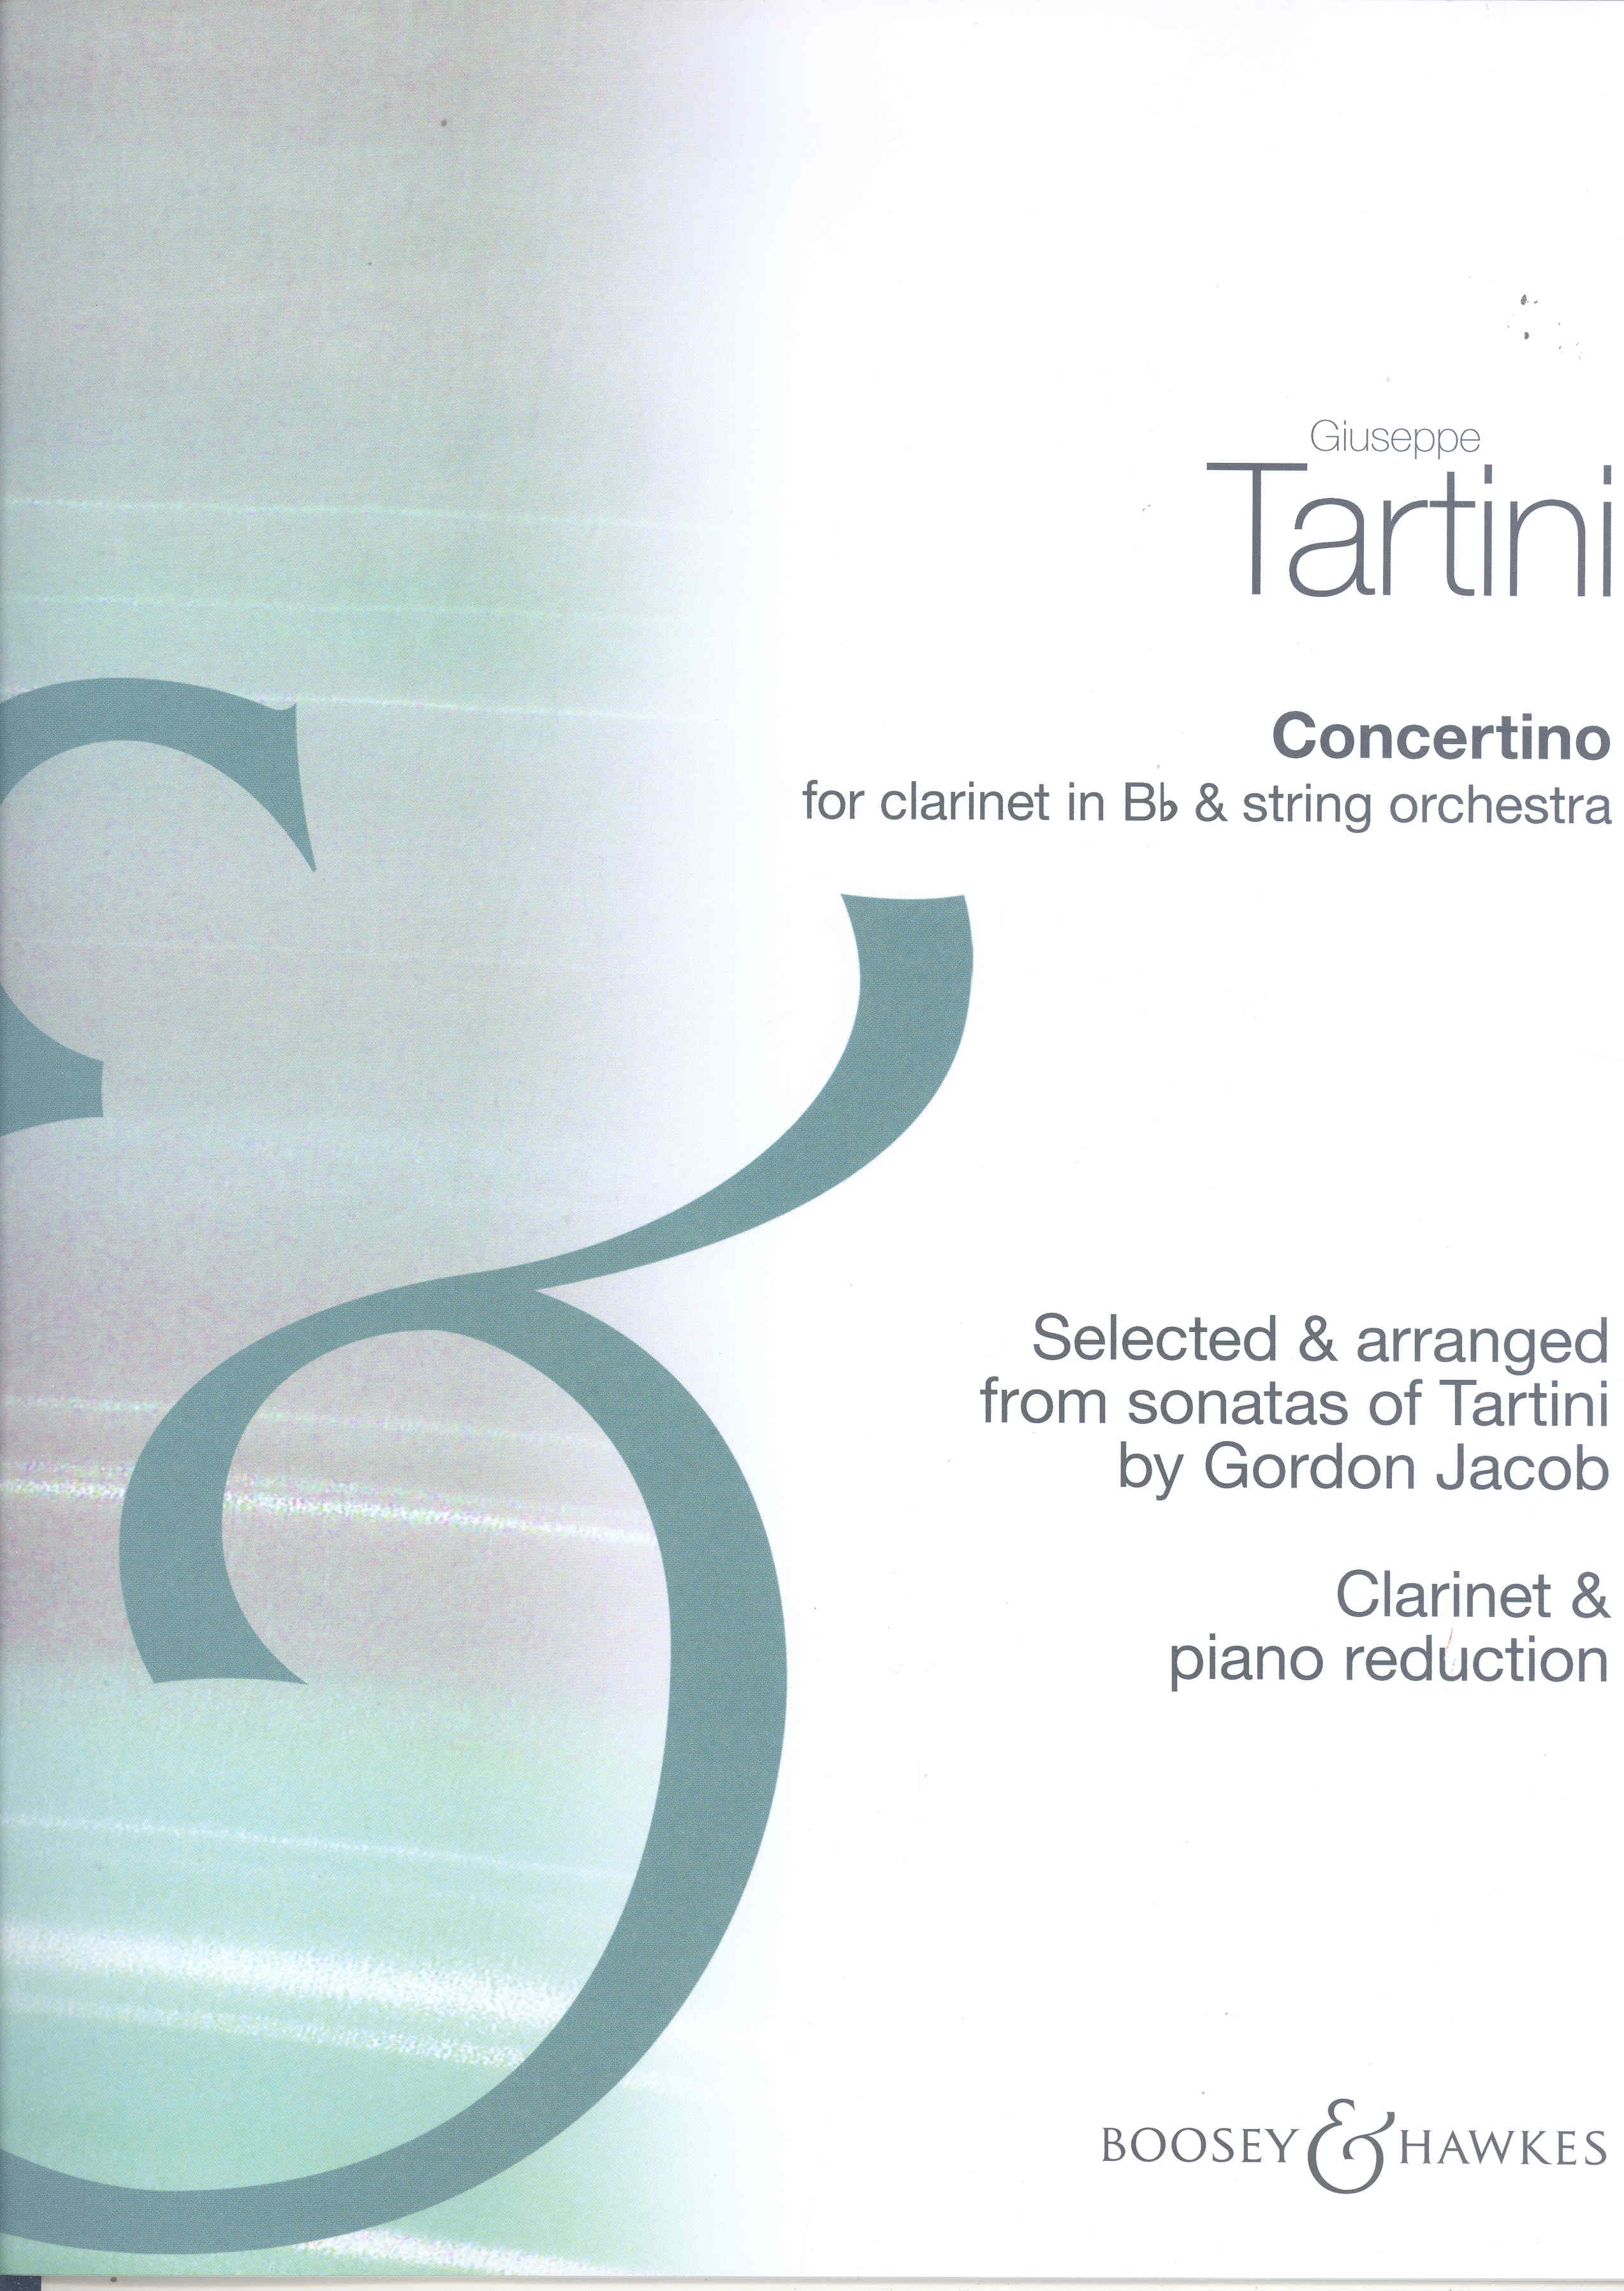 Tartini Concertino (ed Jacob) Clarinet & Piano Sheet Music Songbook